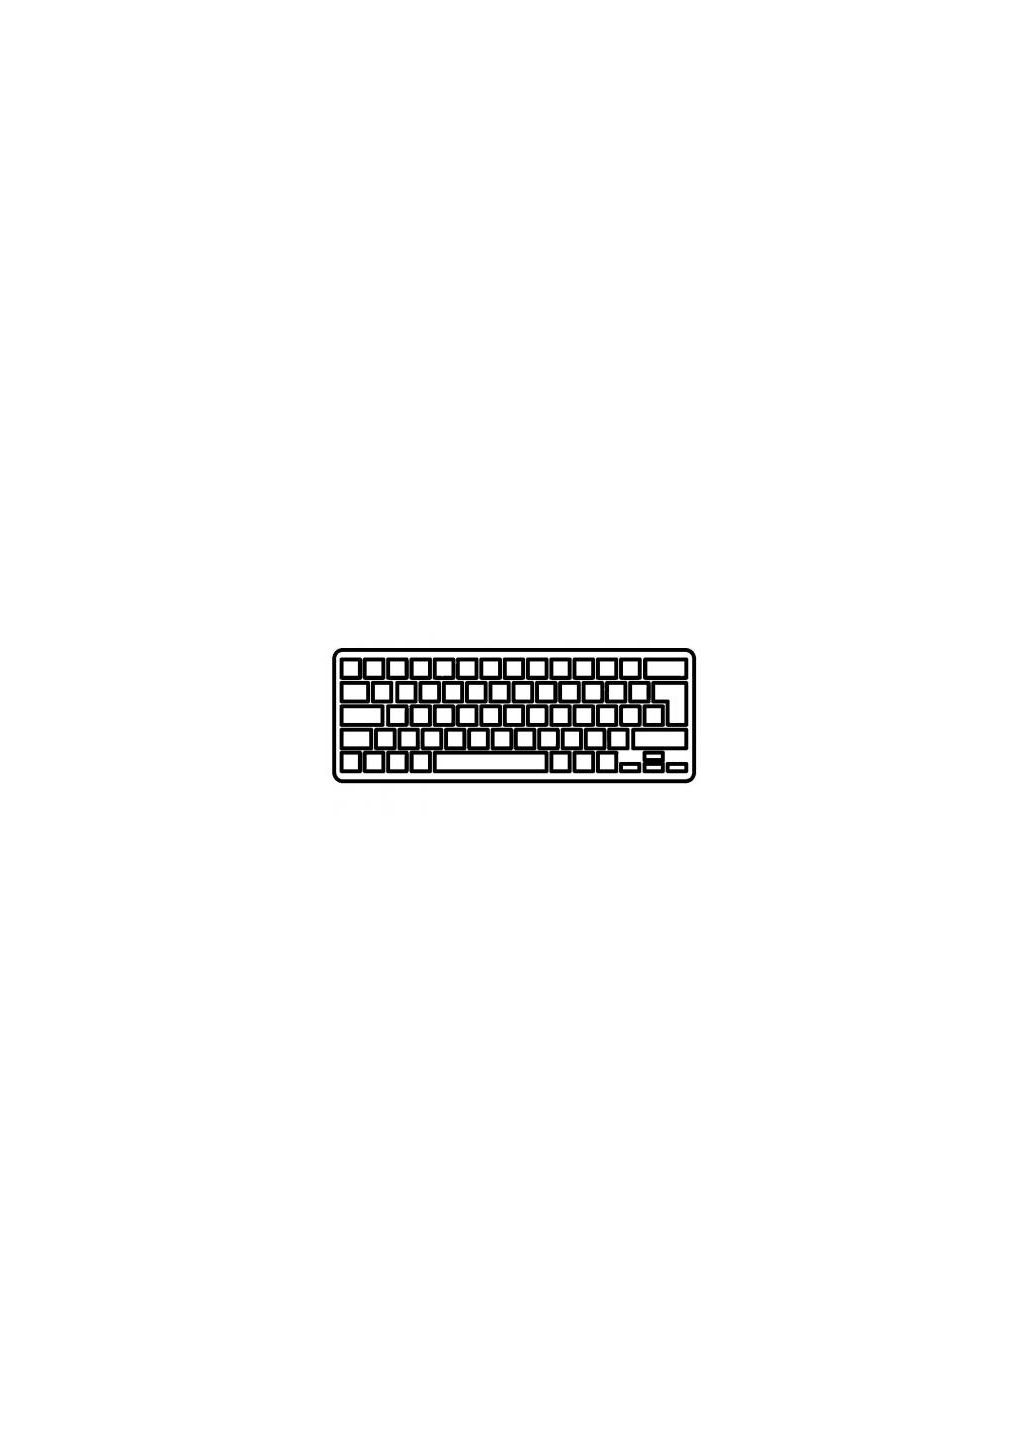 Клавиатура ноутбука Macbook Pro 15.4" A1286 (20092012) черн.без рамки RU/US (A43903) Apple macbook pro 15.4" a1286 (2009-2012) черн.без рамки (276706504)